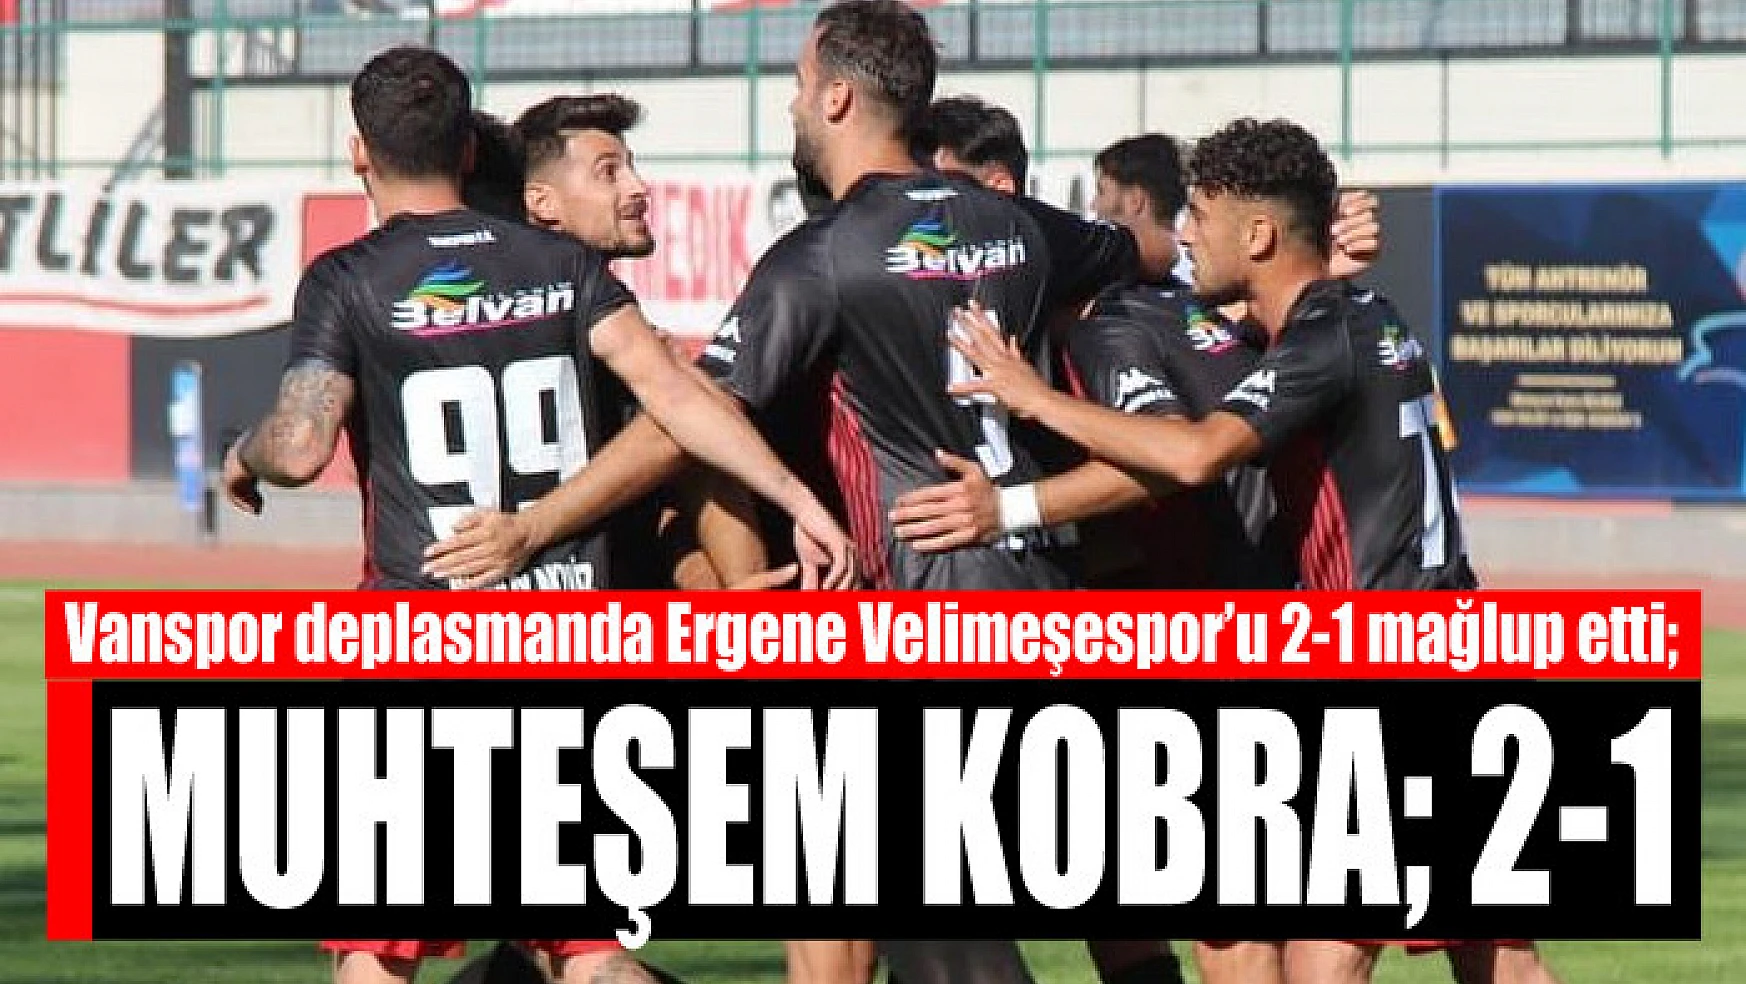 Vanspor deplasmanda Ergene Velimeşespor'u 2-1 mağlup etti Muhteşem Kobra 2-1